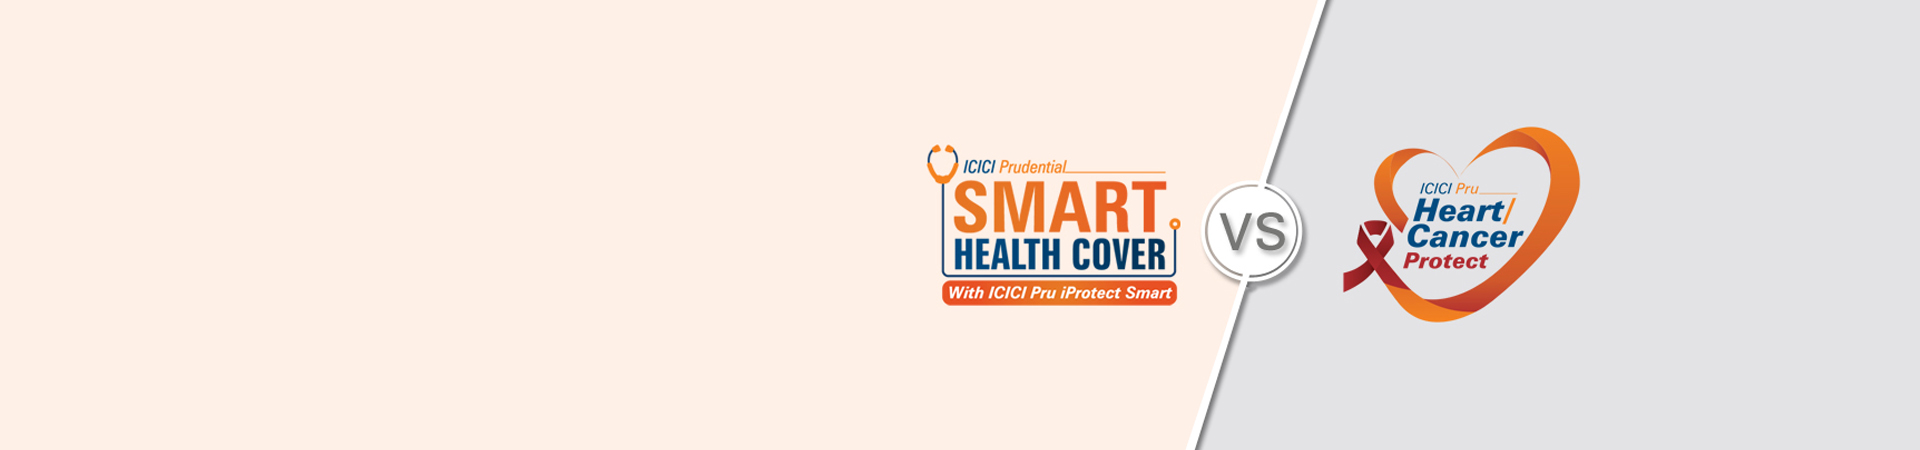 compare-health-insurance